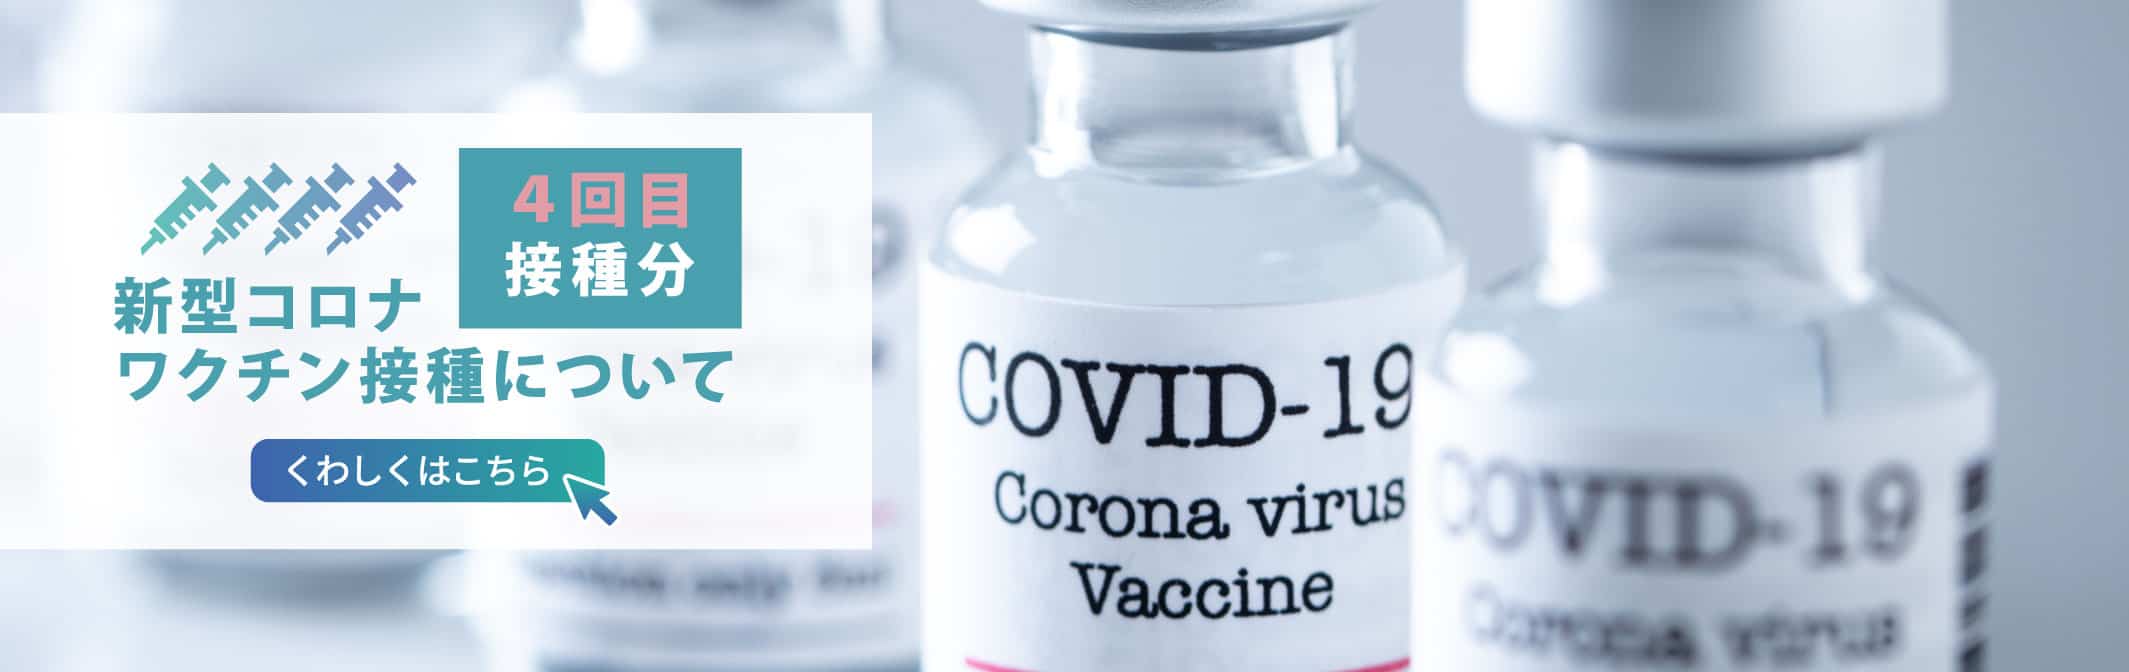 新型コロナワクチン接種 4回目接種について